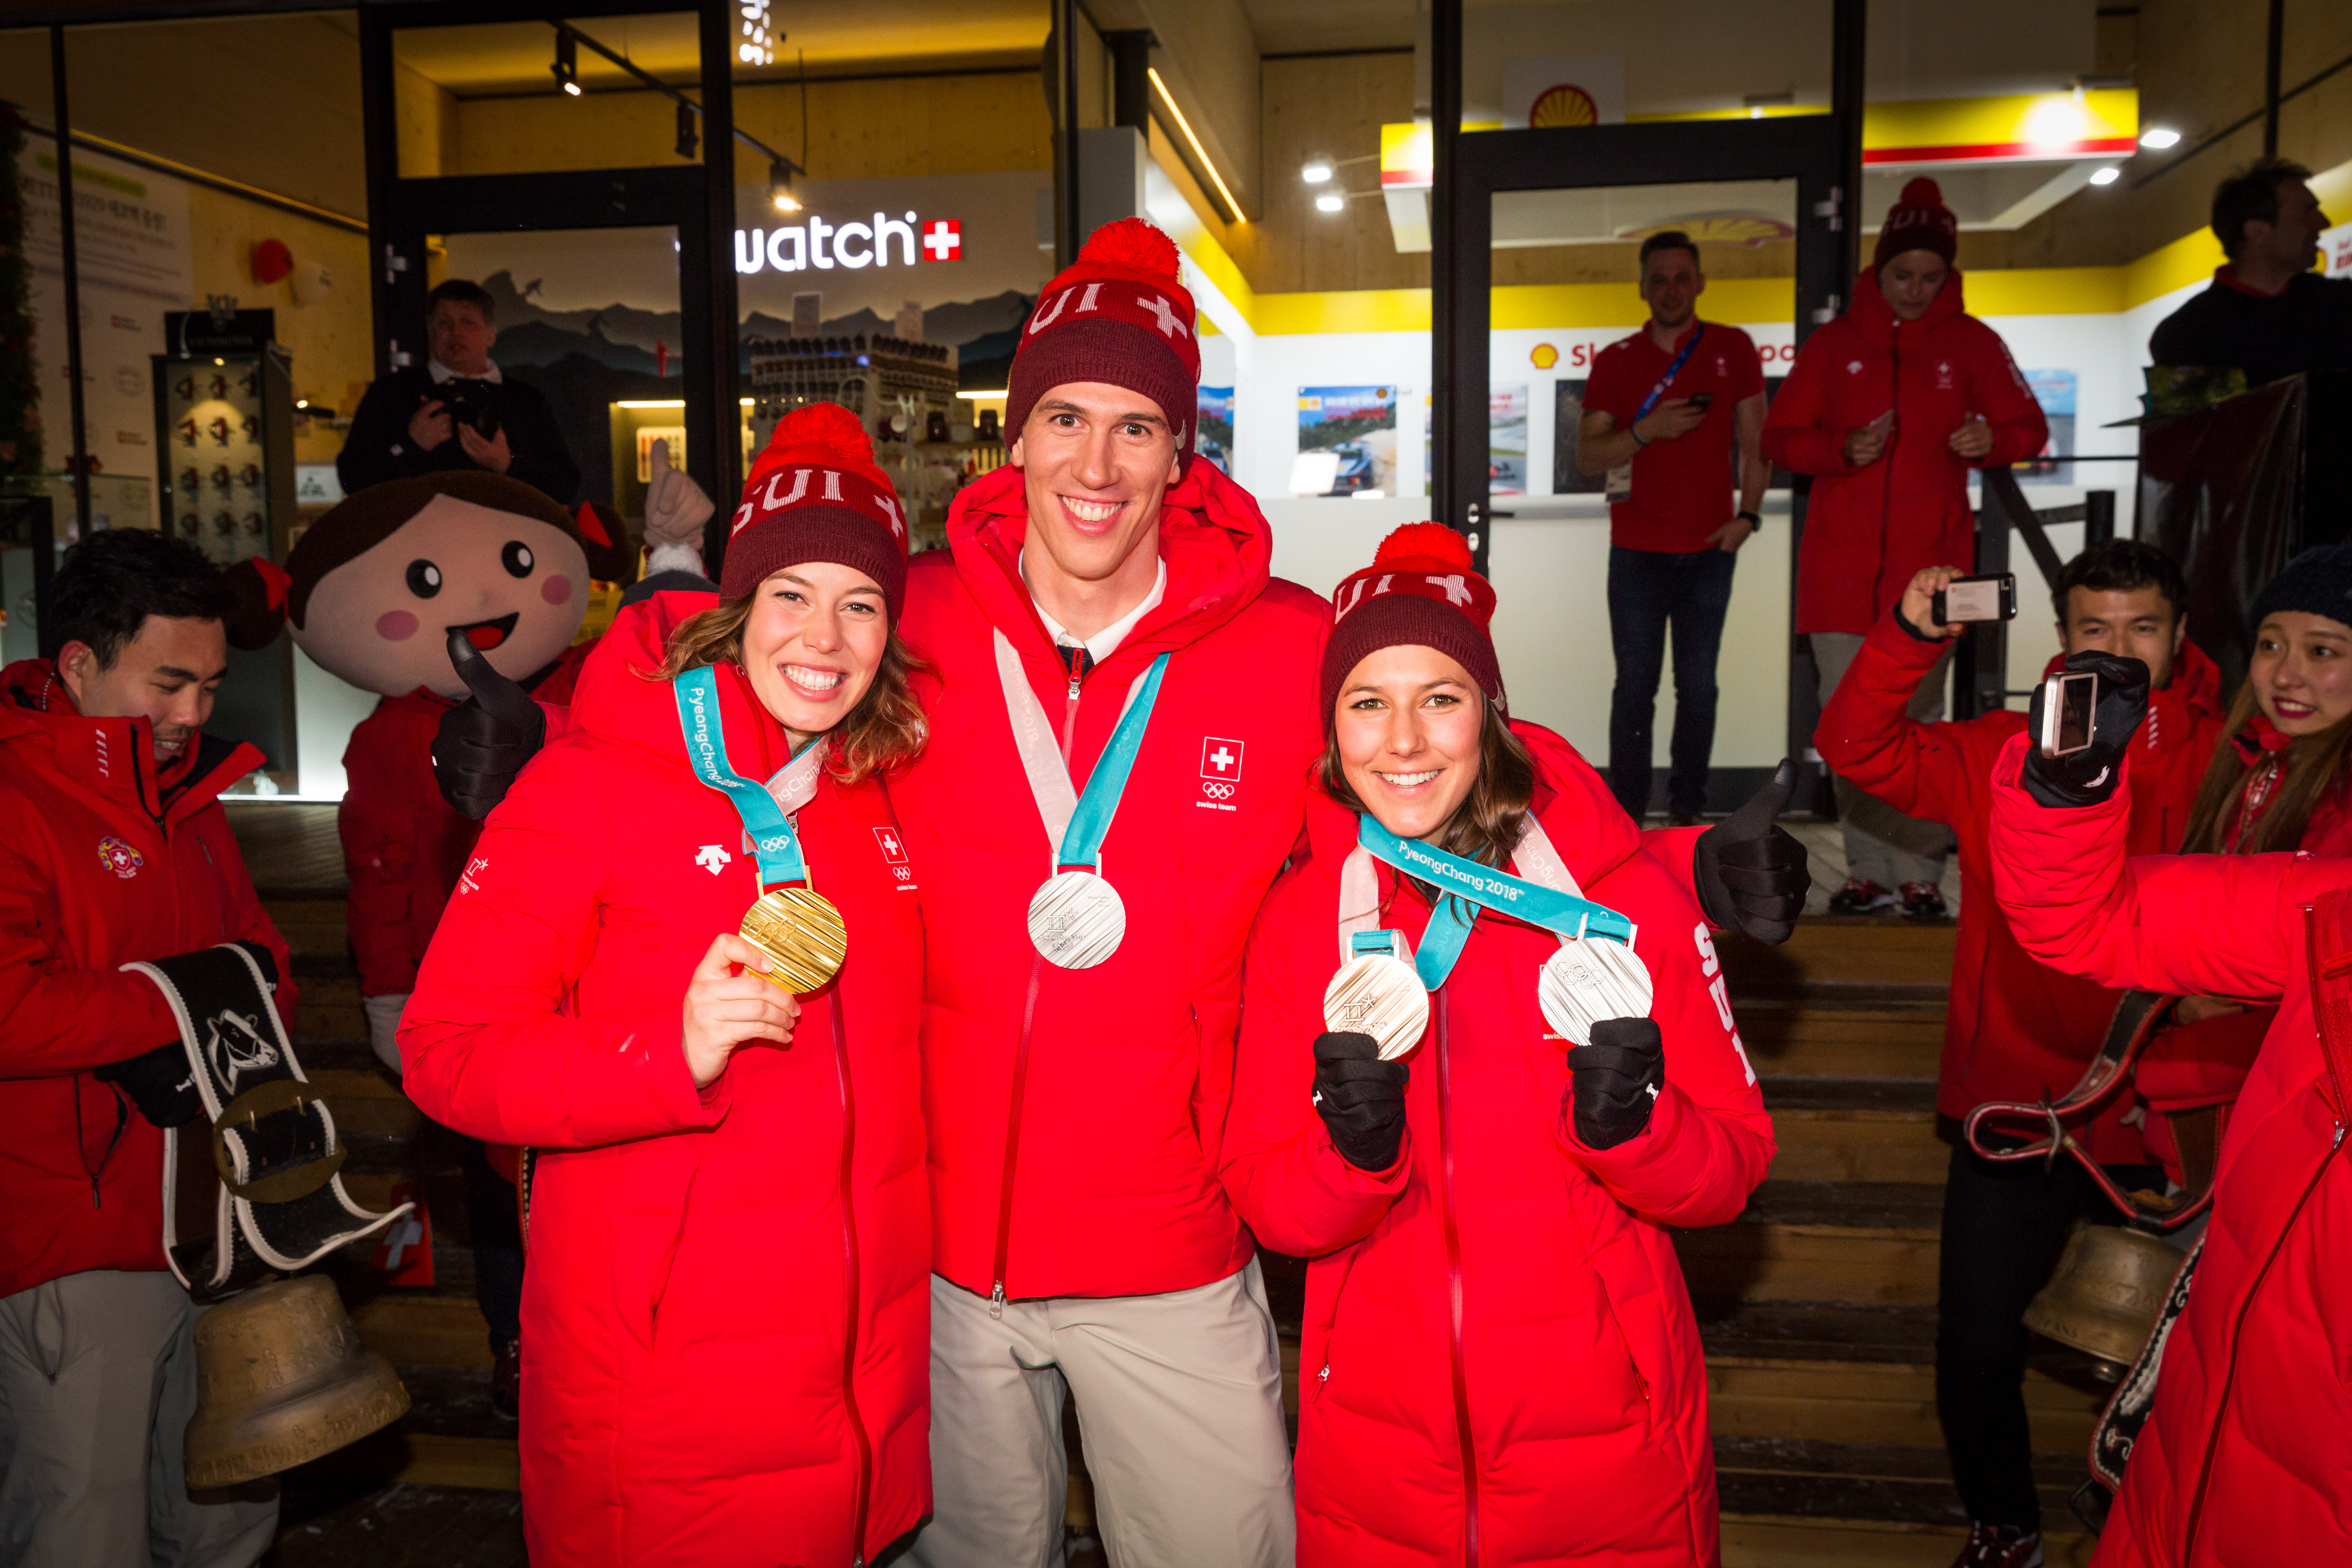 Michelle Gisin, Ramon Zenhäusern and Wendy Holdener in Pyeongchang in 2018